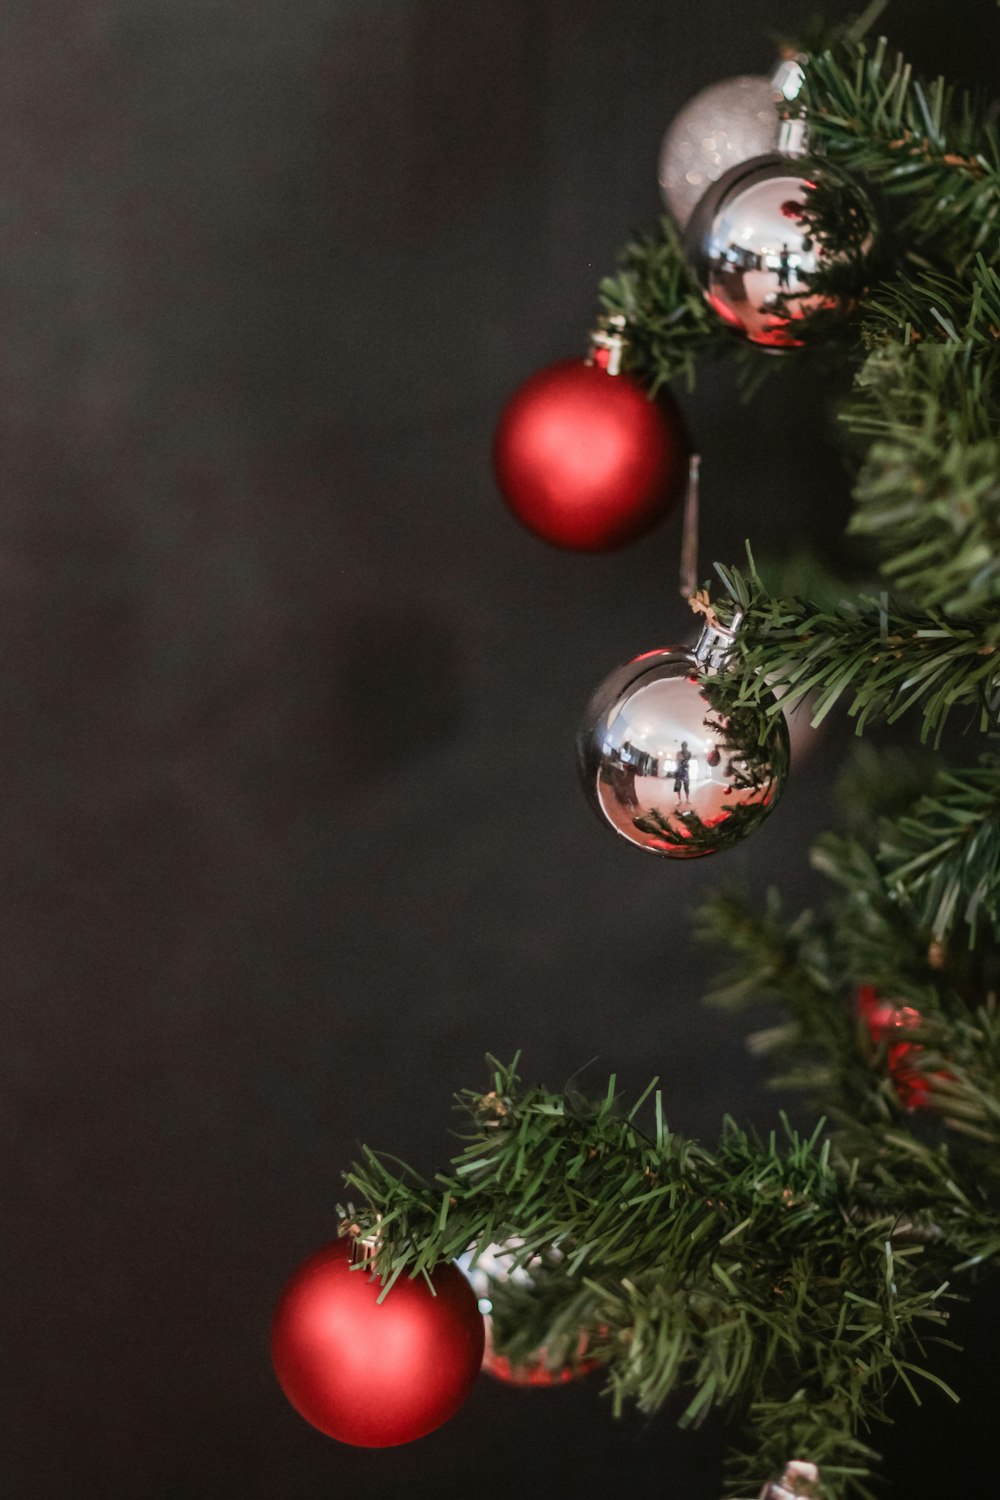 Christmas bauble hanging on Christmas tree